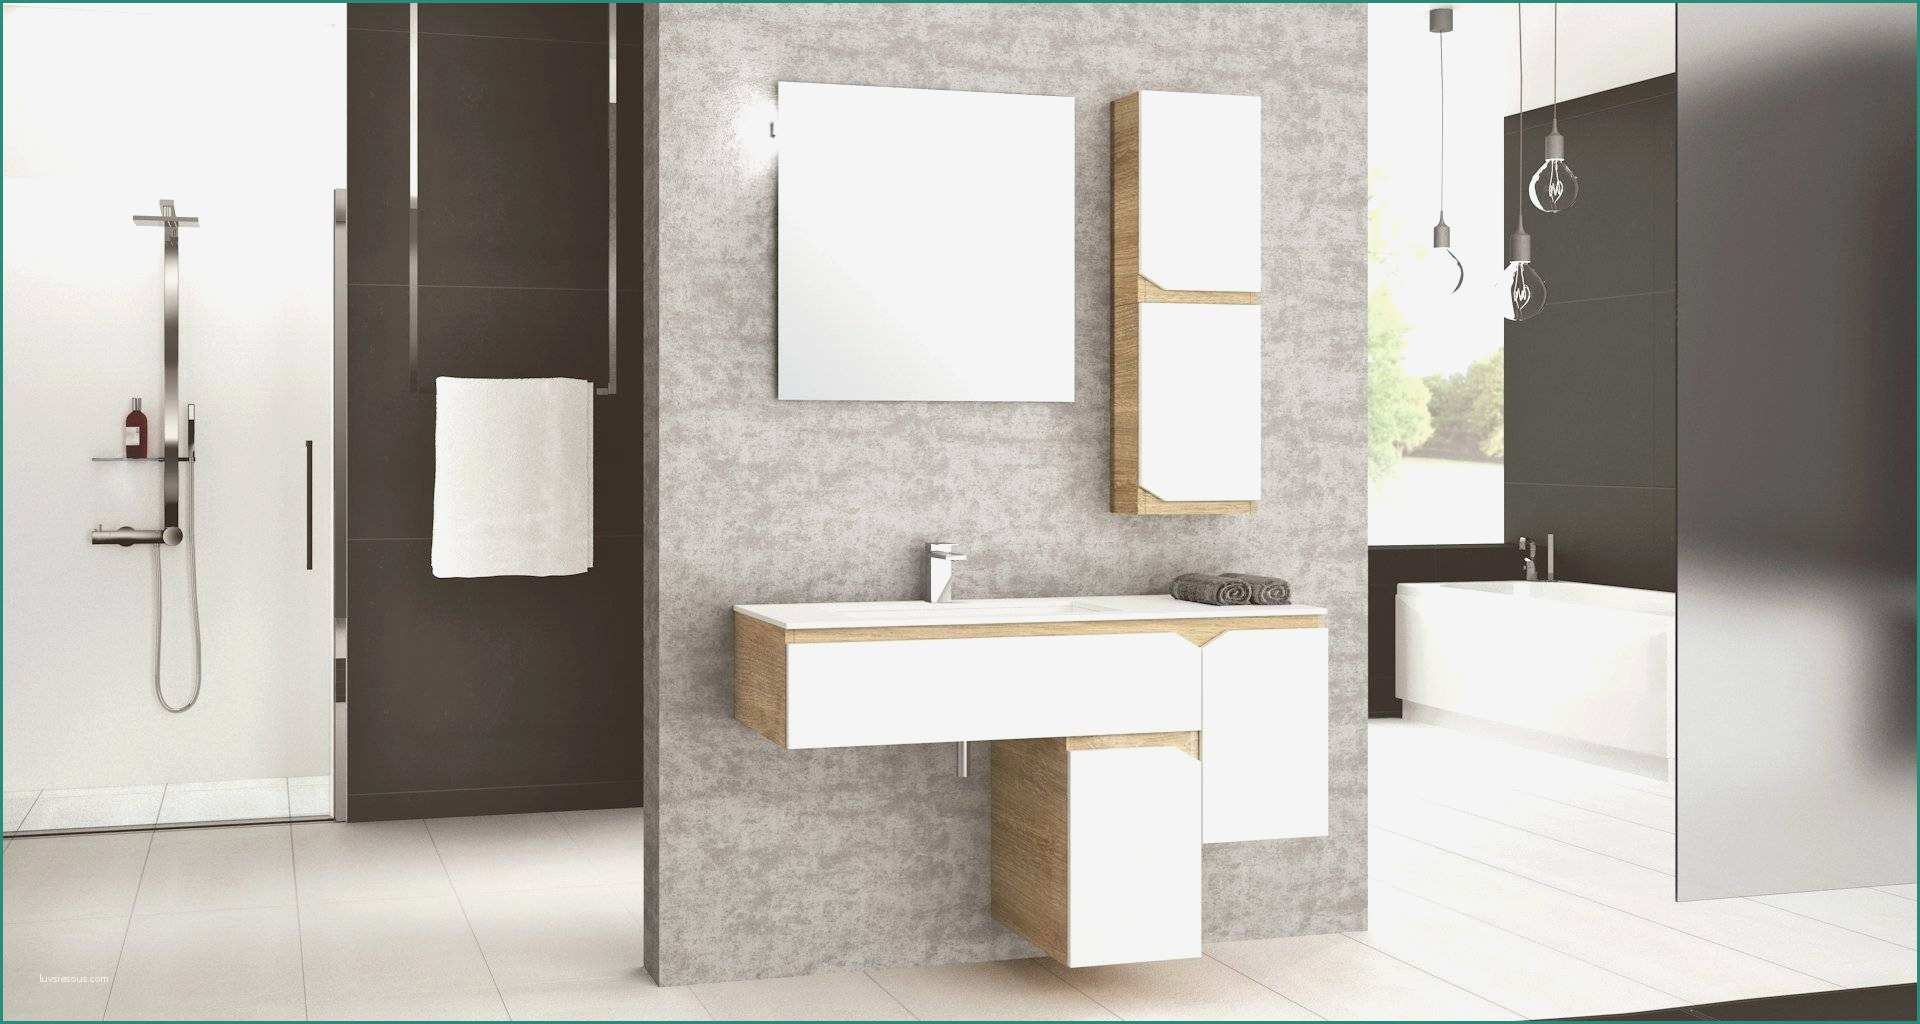 Orsolini Arredo Bagno E Elegante Mobile Bagno Ikea Casa Design Idee Su Arredamento